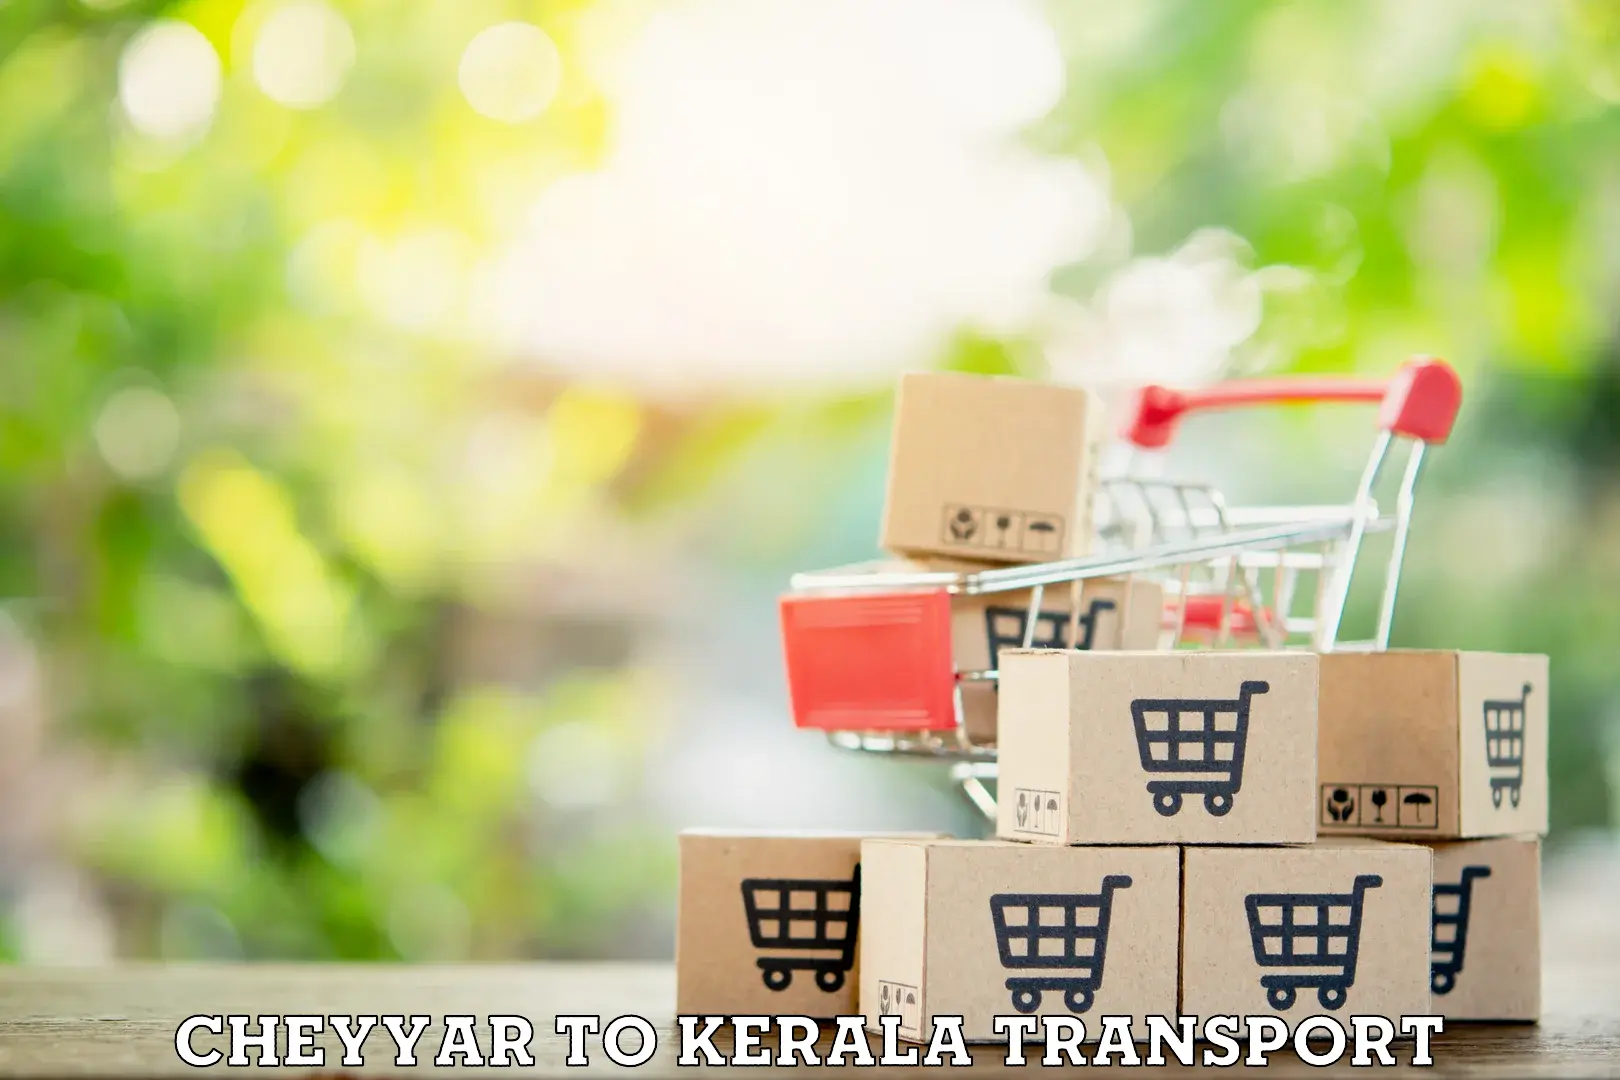 Daily parcel service transport Cheyyar to Mundakayam